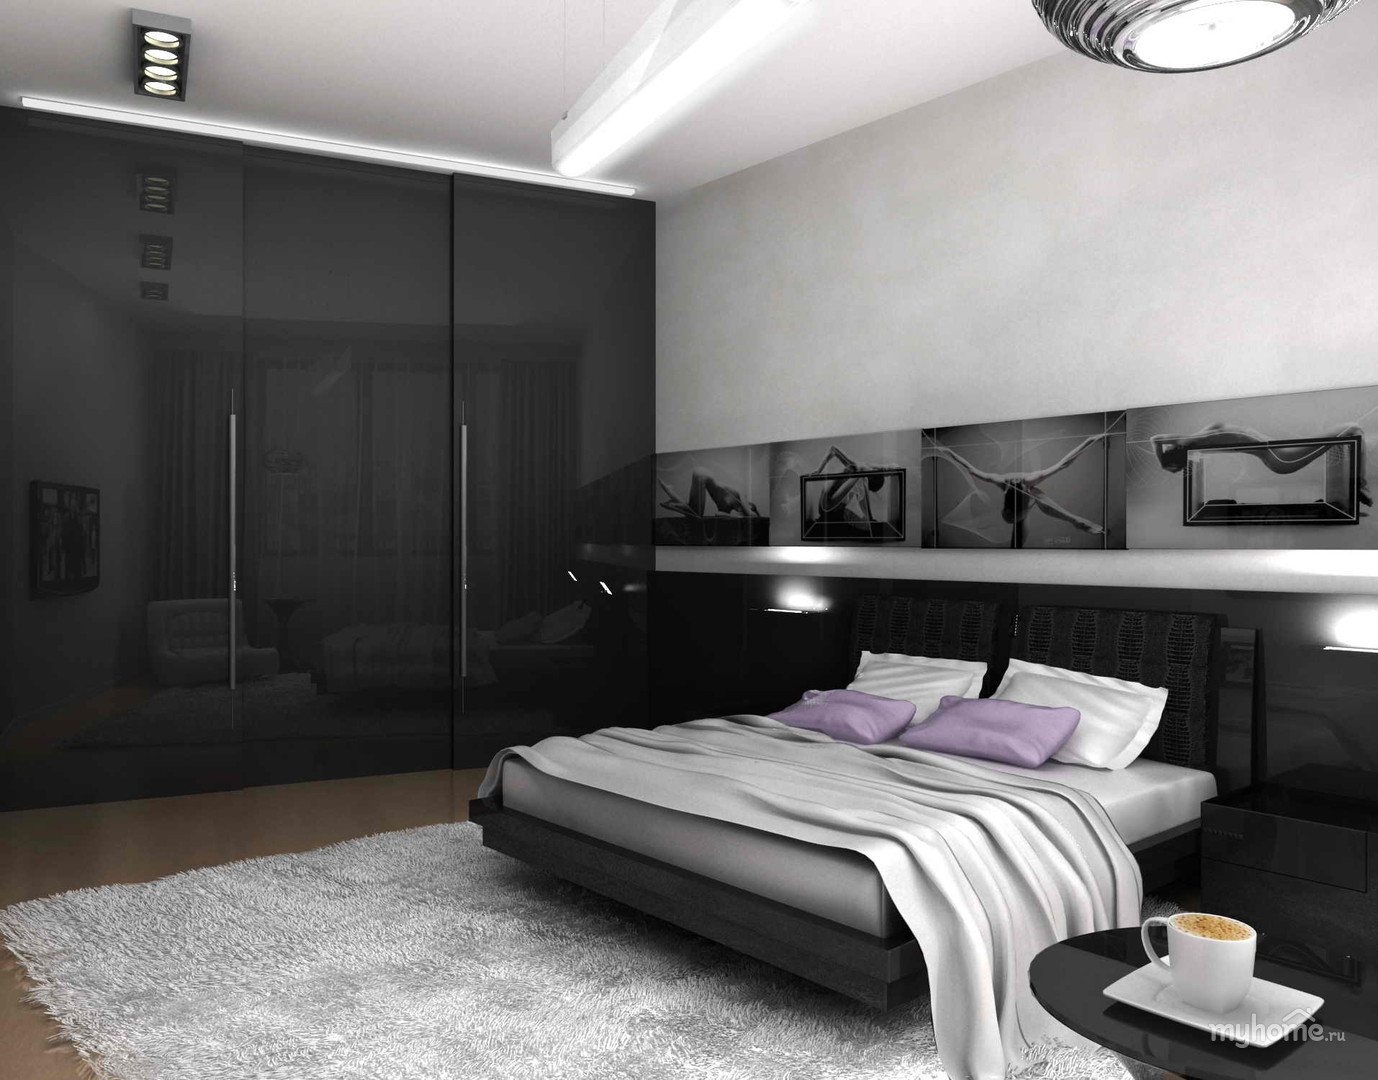 تصميم غرفة نوم عالية التكنولوجيا الصورة